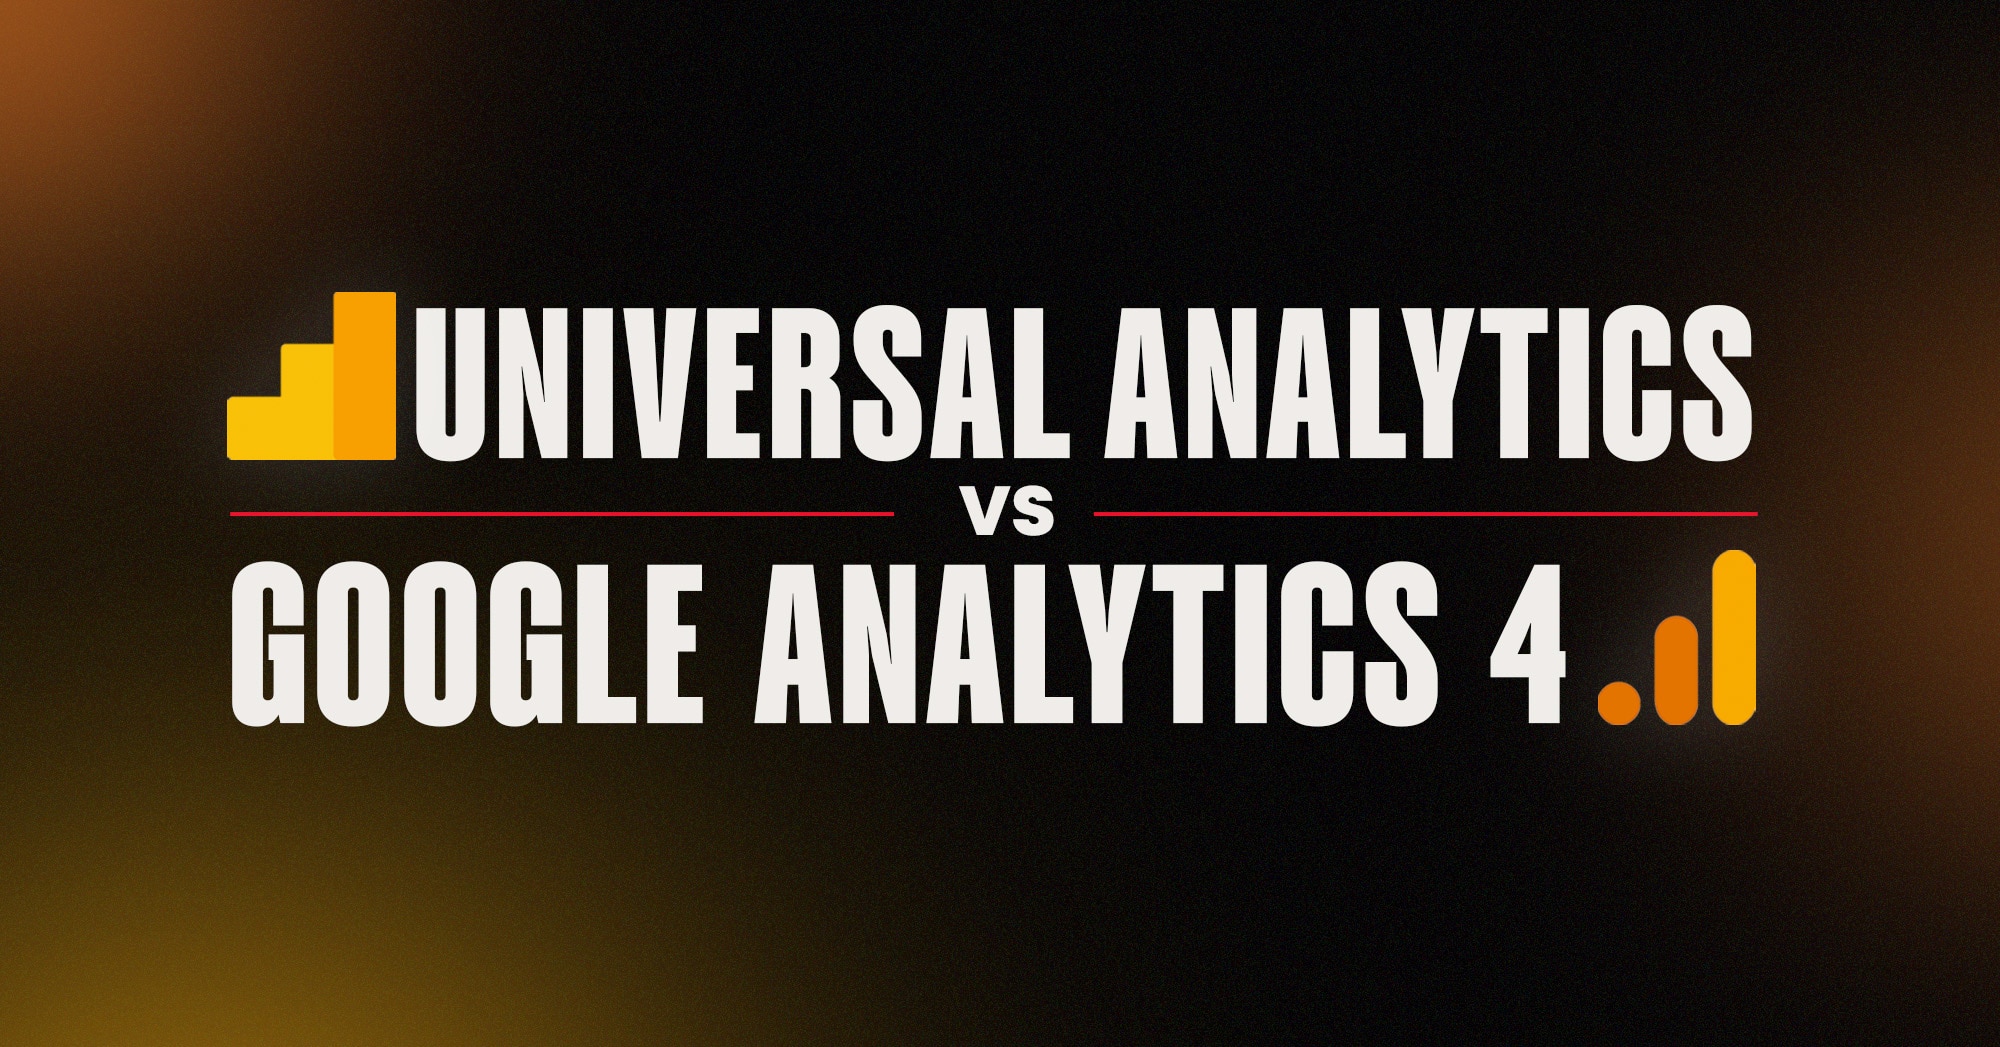 Universal Analytics vs Google Analytics 4